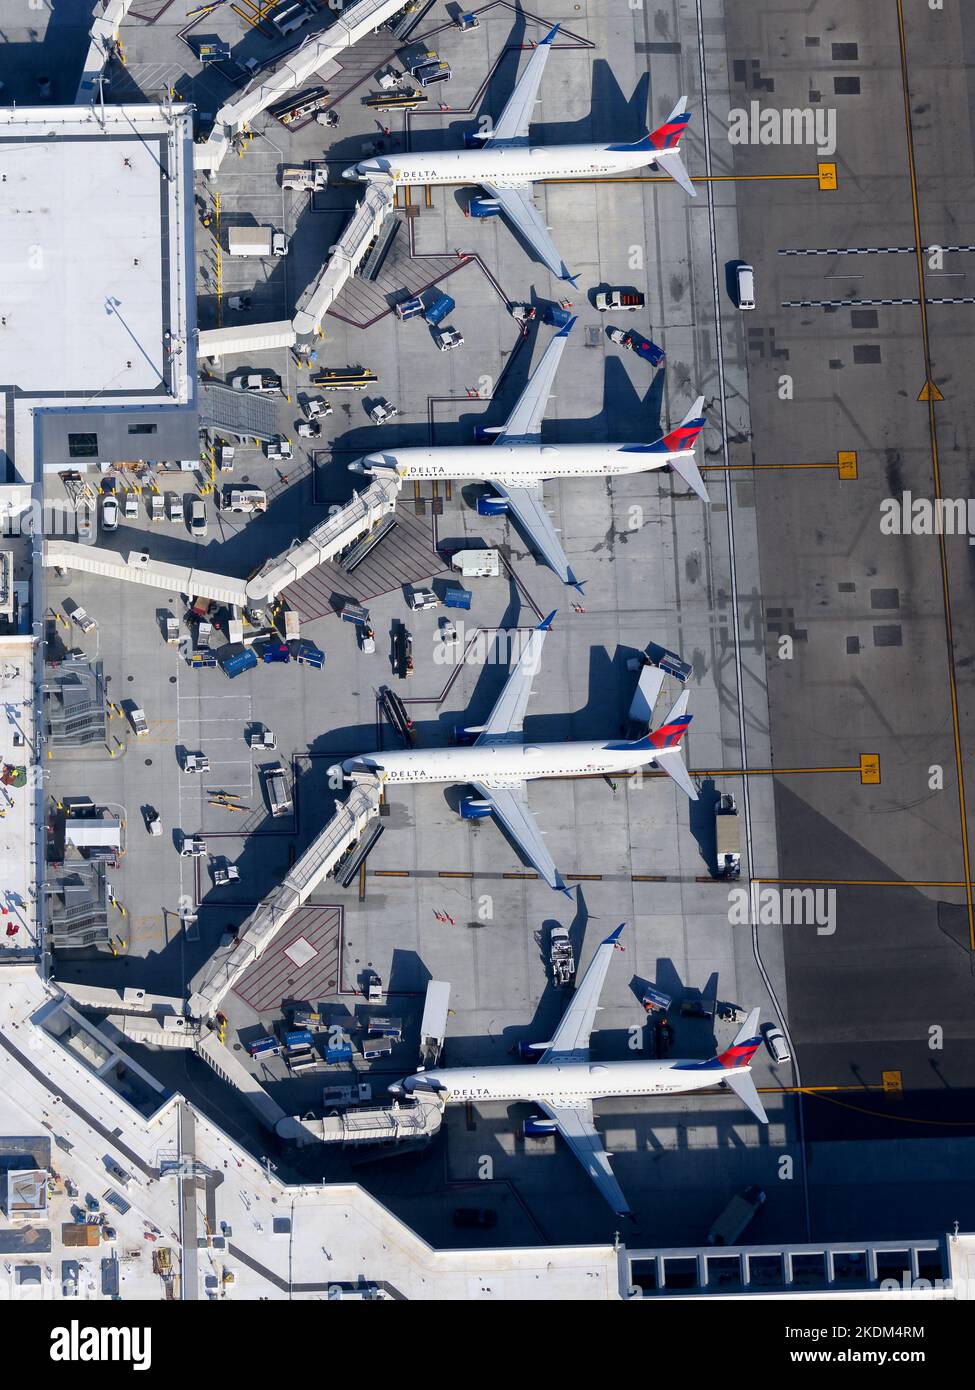 Los Angeles International Airport Terminal 2 wird von Delta Airlines genutzt. Delta Airlines Boeing 737-Flugzeuge, die am LAX Airport geparkt sind. Ebenen stehen an. Stockfoto